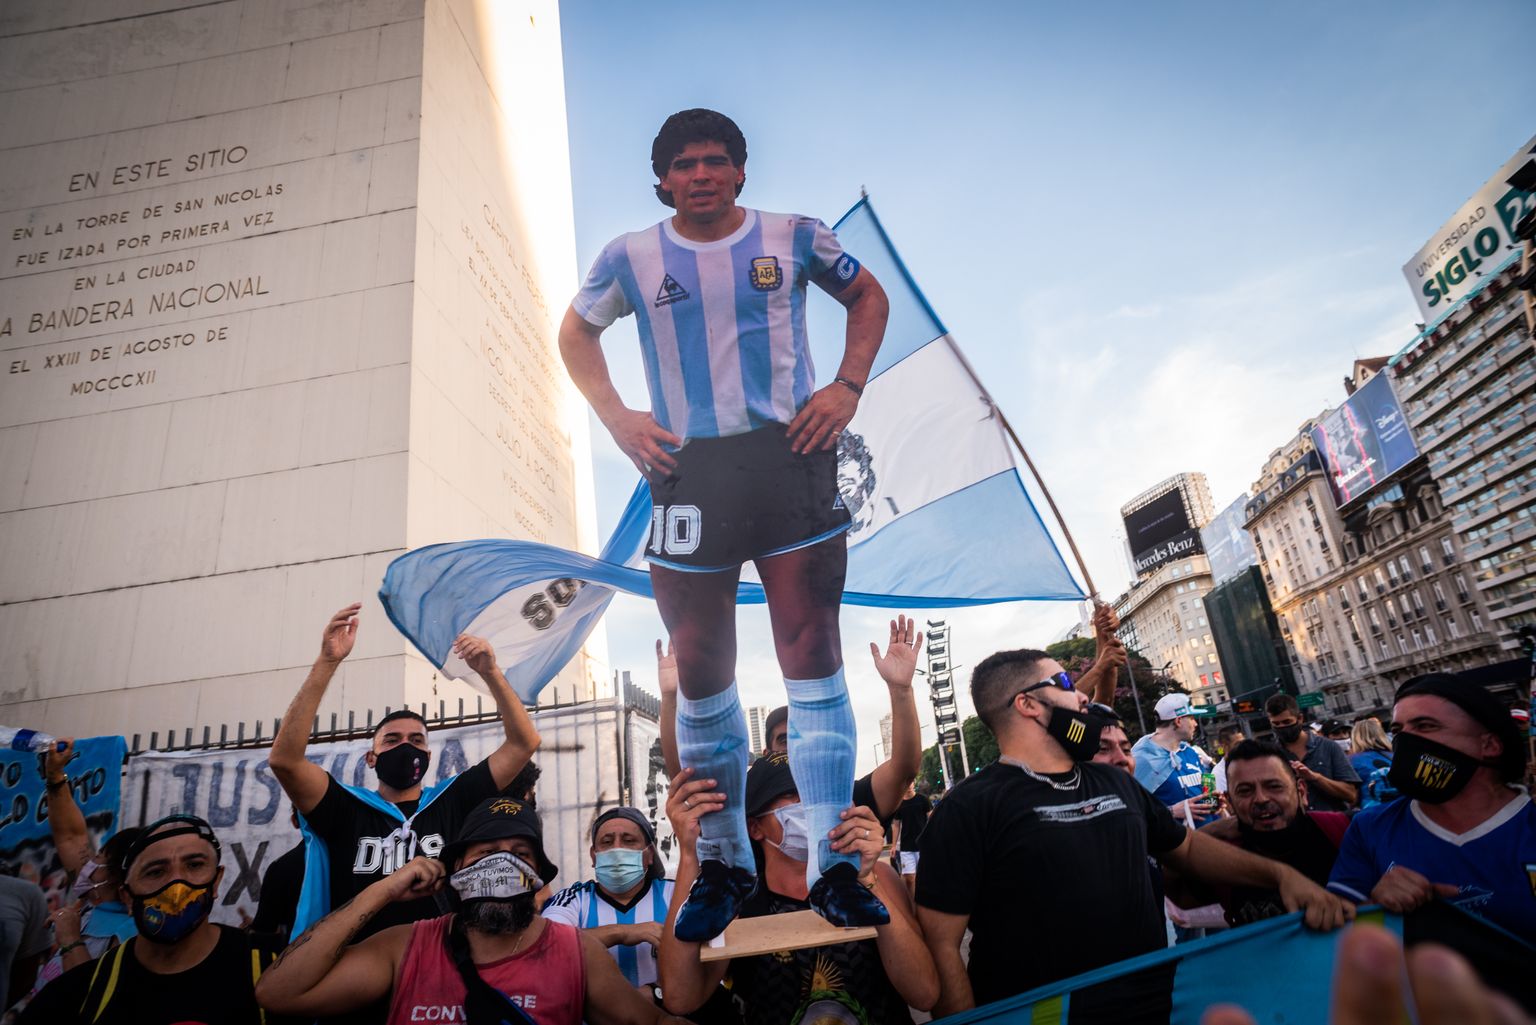 10. märtsil 2021 marssisid Buenos Aireses Maradona fännid kaasas loosungid: Ta pole surnuid, nad tapsid ta!